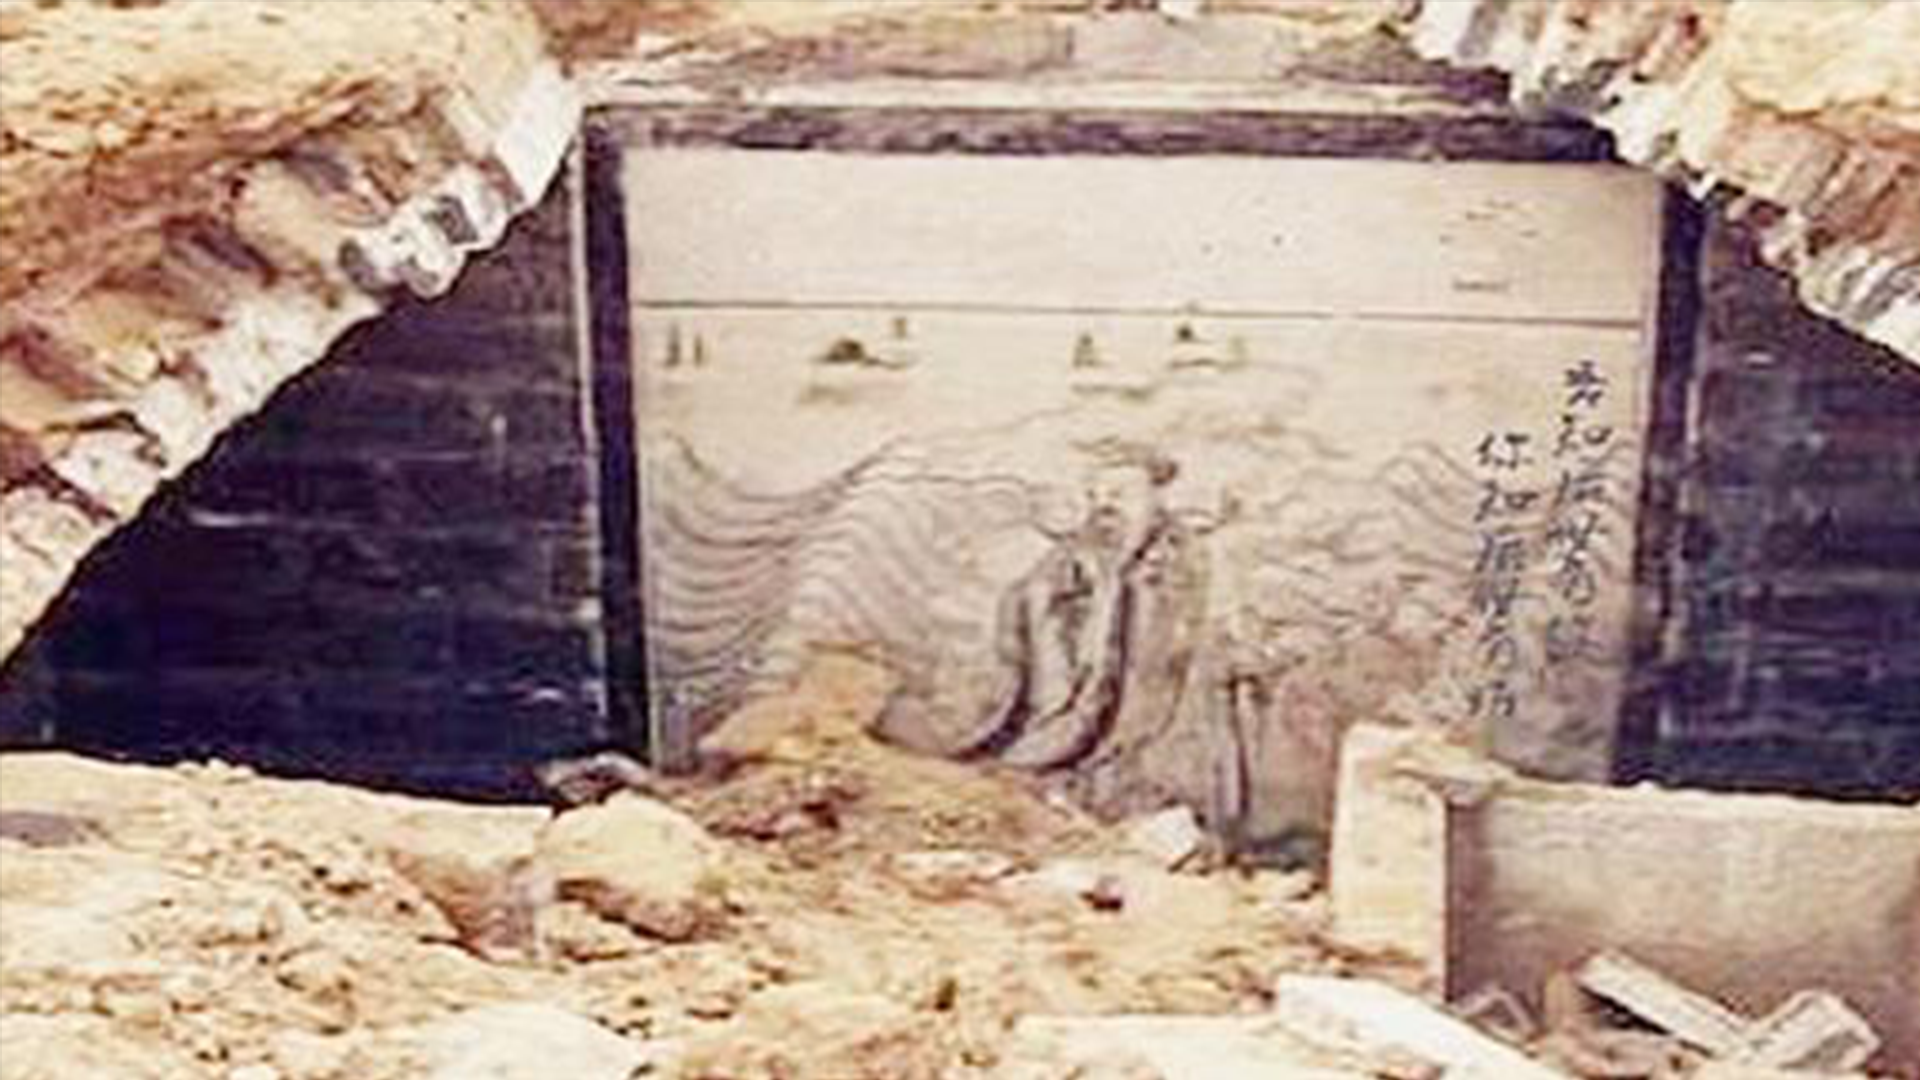 诸葛亮之墓被发掘,墓内场景轰动考古界,专家:他没骗我们